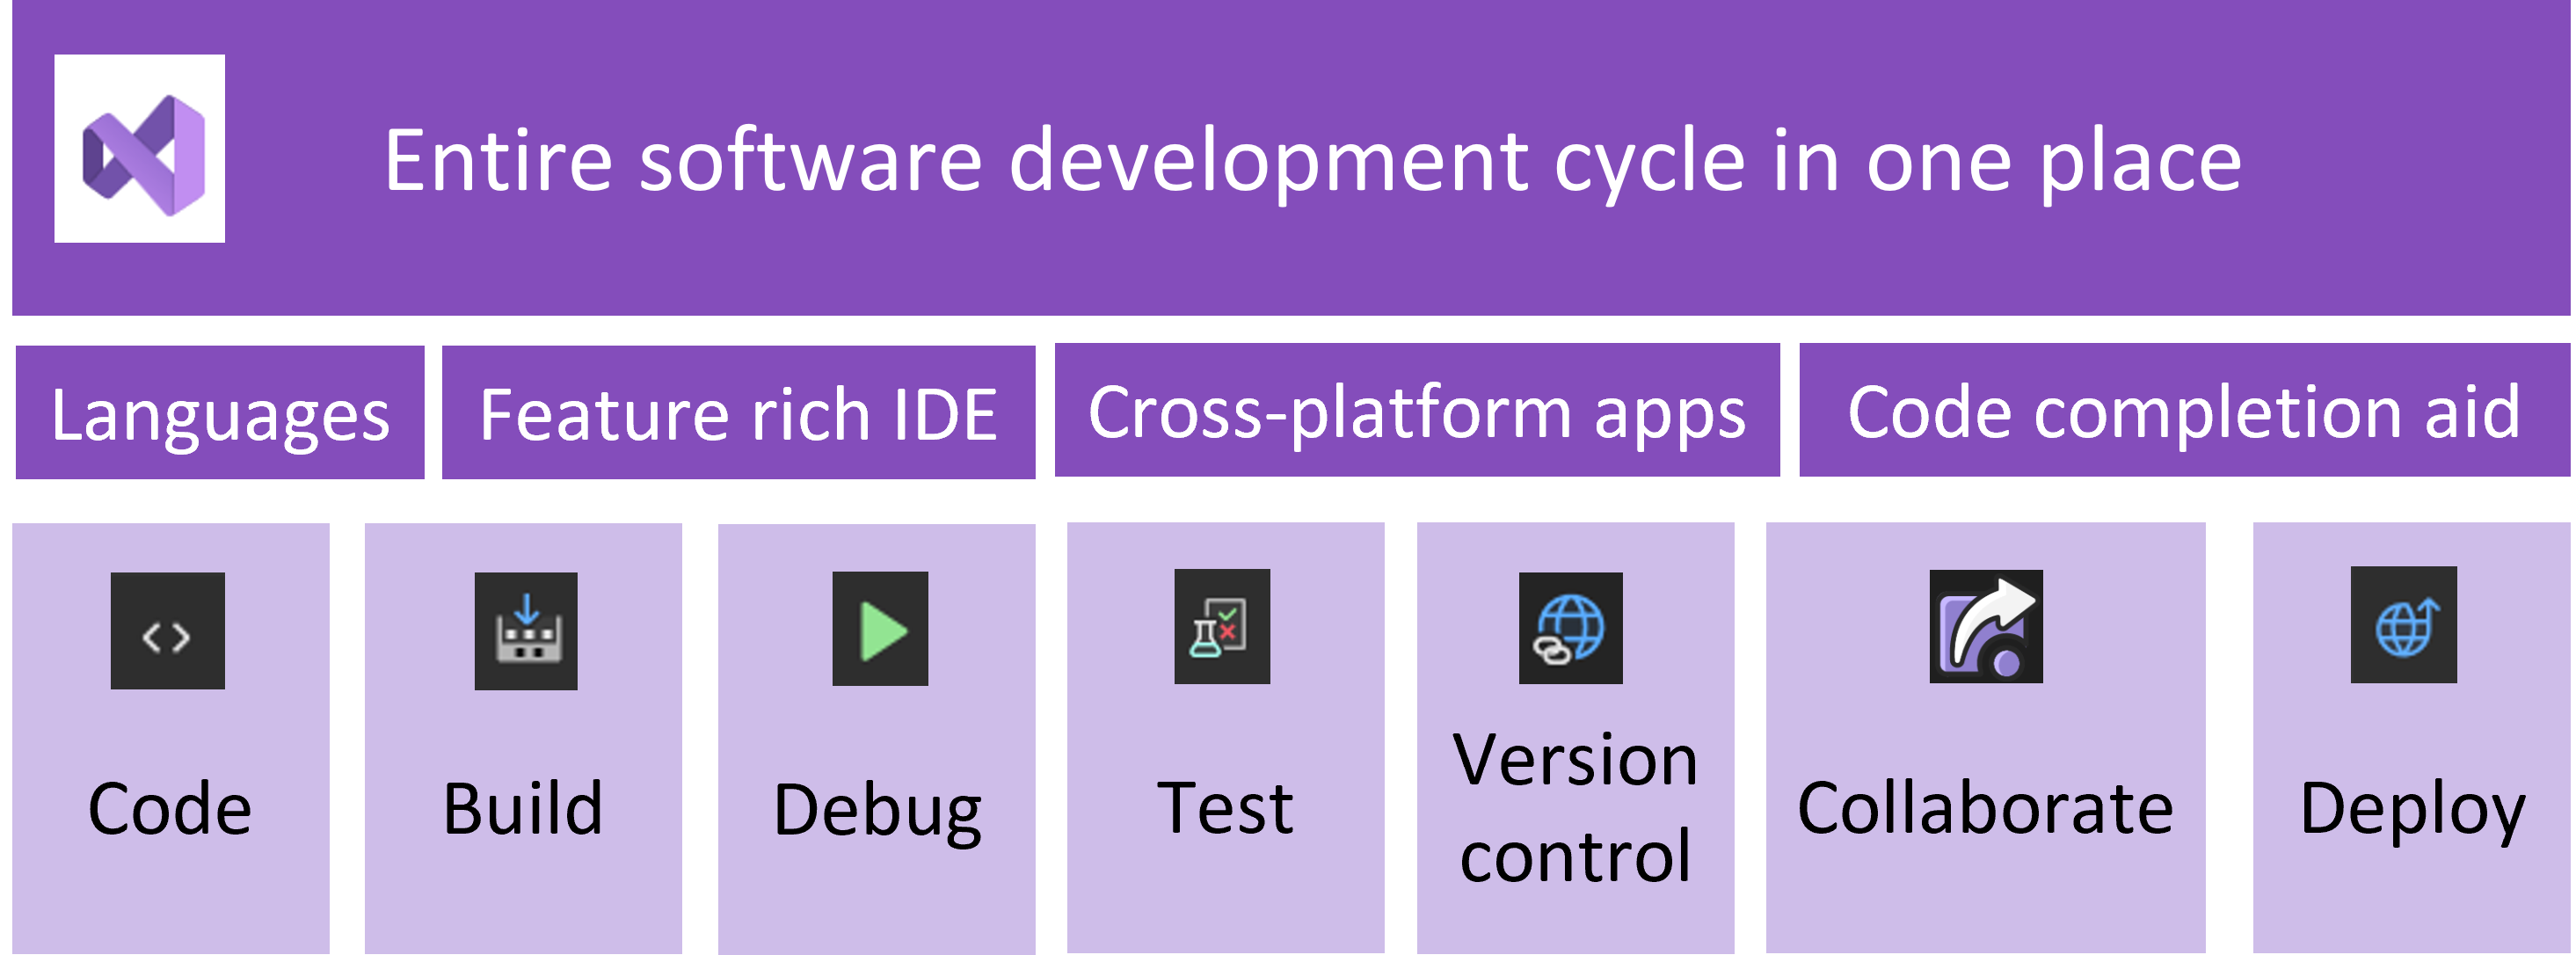 Das Diagramm zeigt den Software-Entwicklungszyklus, wobei Visual Studio die verschiedenen Prozessschritte erläutert.